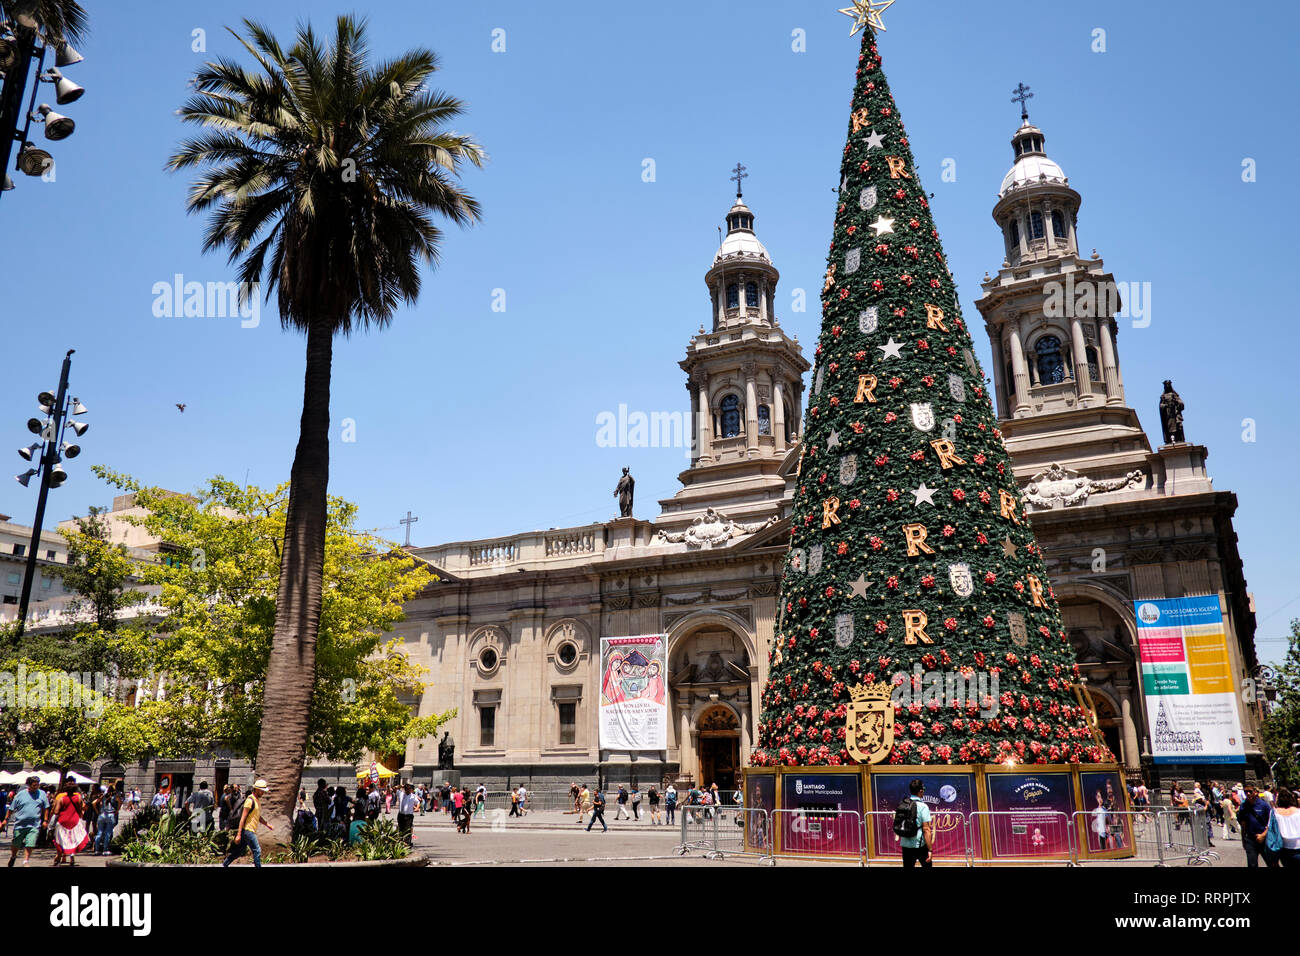 Plaza de Armas in Santiago de Chile during Christmas time. Stock Photo